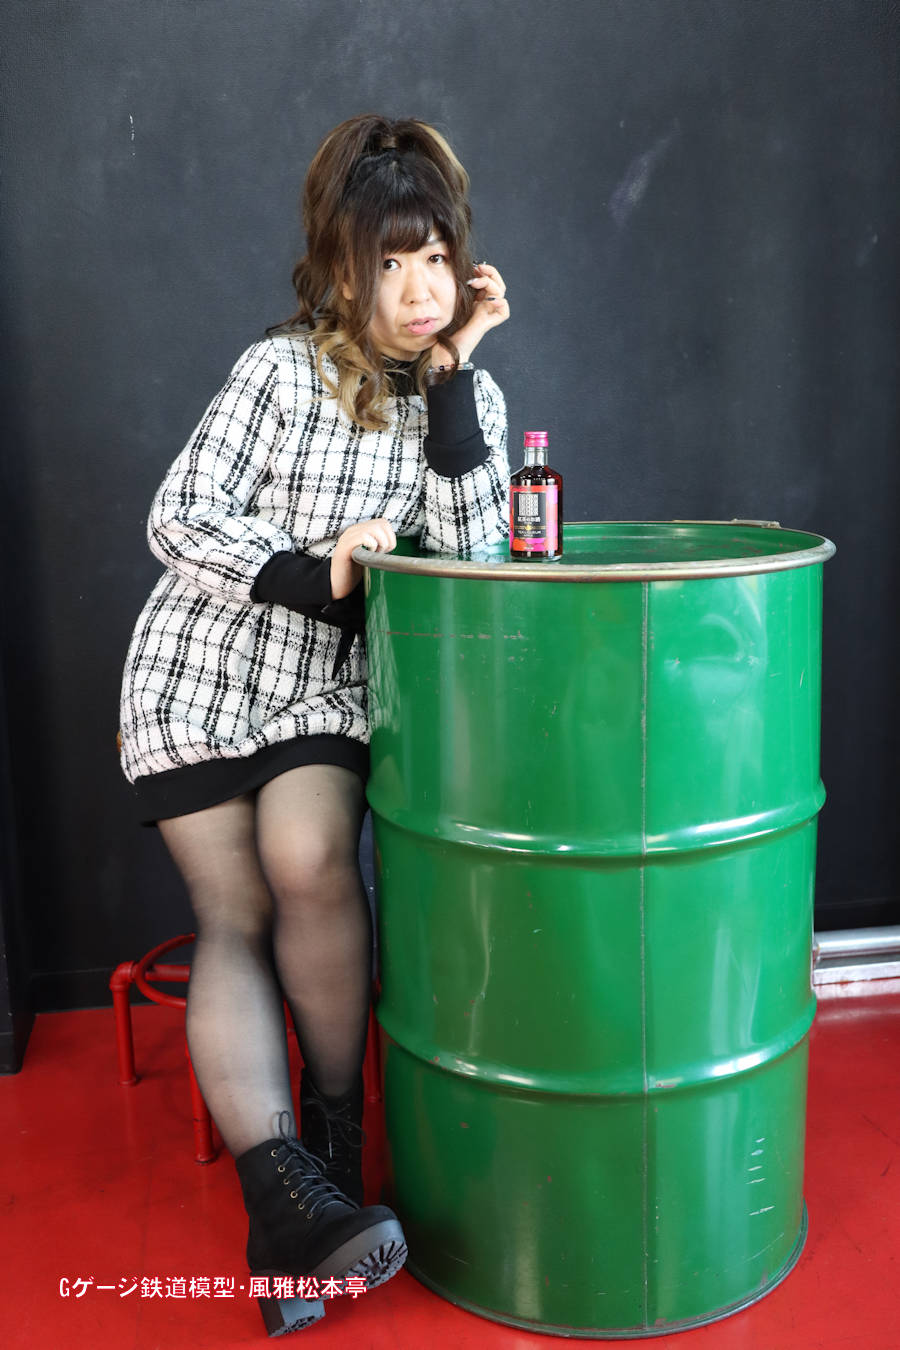 キヤノン製広角単焦点レンズ「EF-M22mm f2 STN」での撮影例、モデルの女性は地下アイドル歌手の神崎由衣さん。2021年(令和3年)11月、ジョイフル撮影会にて撮影。